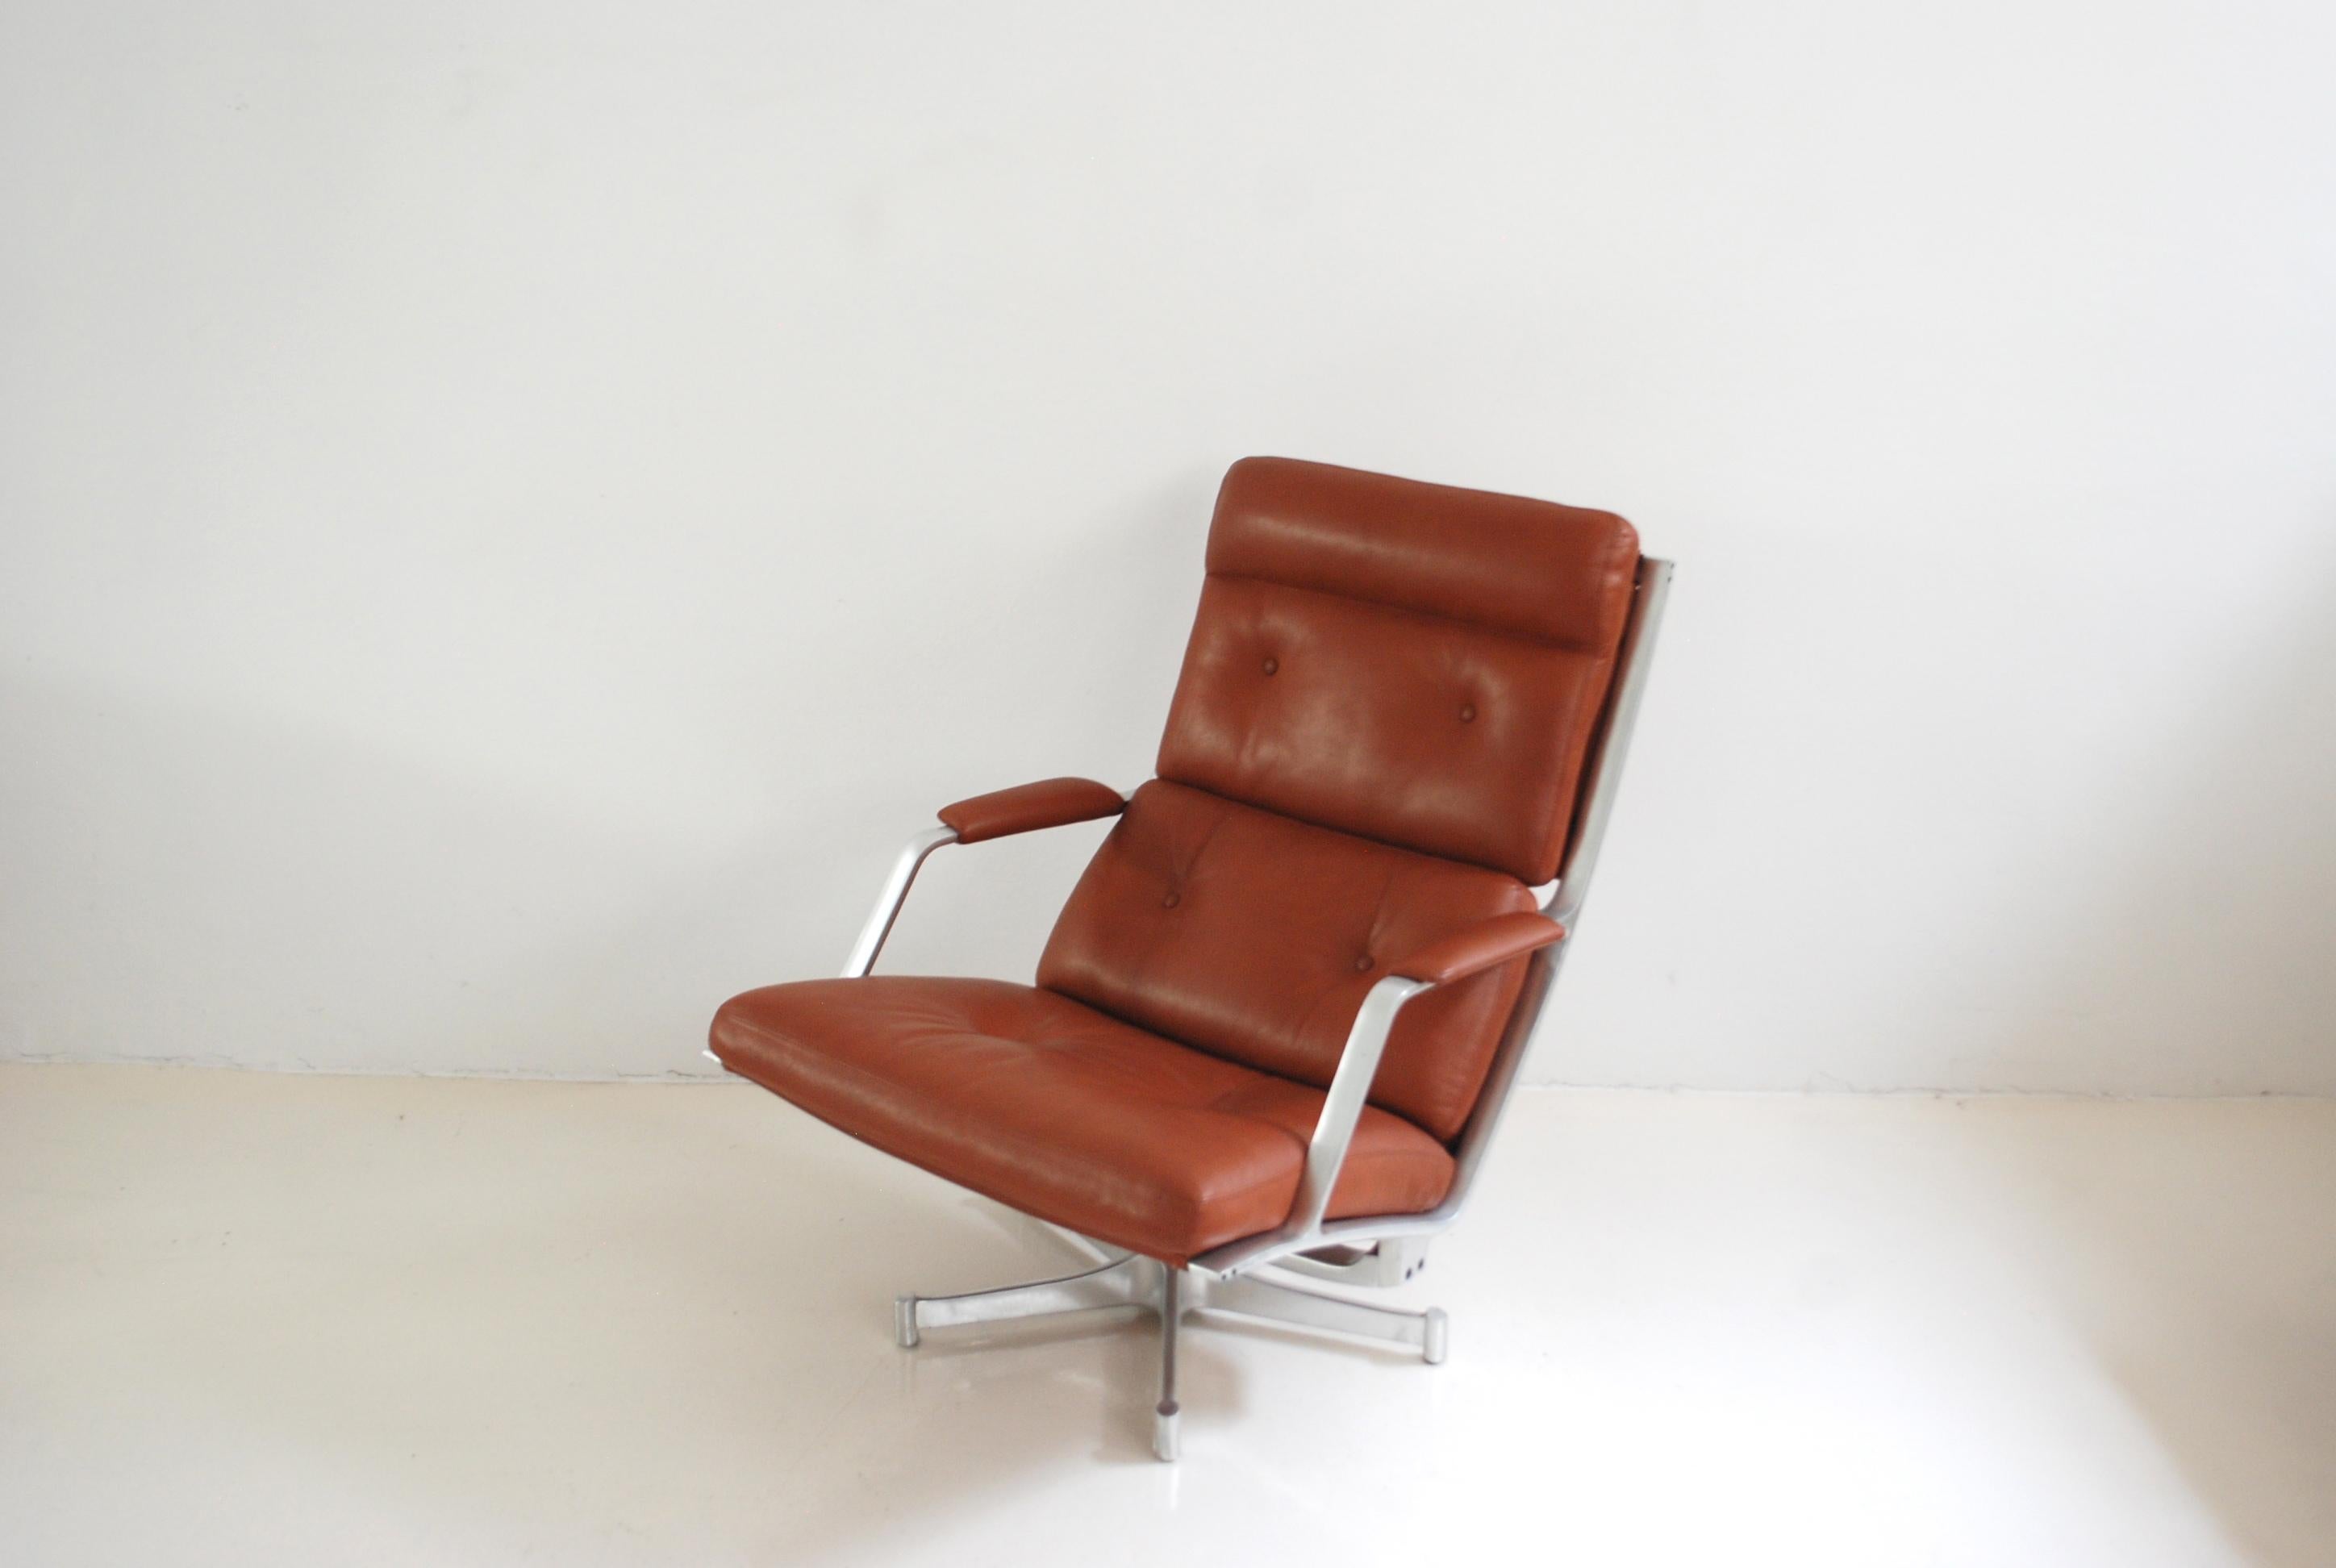 Cette chaise longue FK 85 a été réalisée par Jorgen Kastholm & Preben Fabricius pour Kill International.
Le fauteuil de salon a une structure en aluminium pivotante et un cuir rouge cognac.
Il était neuf, tapissé de cuir aniline.
Le cadre en